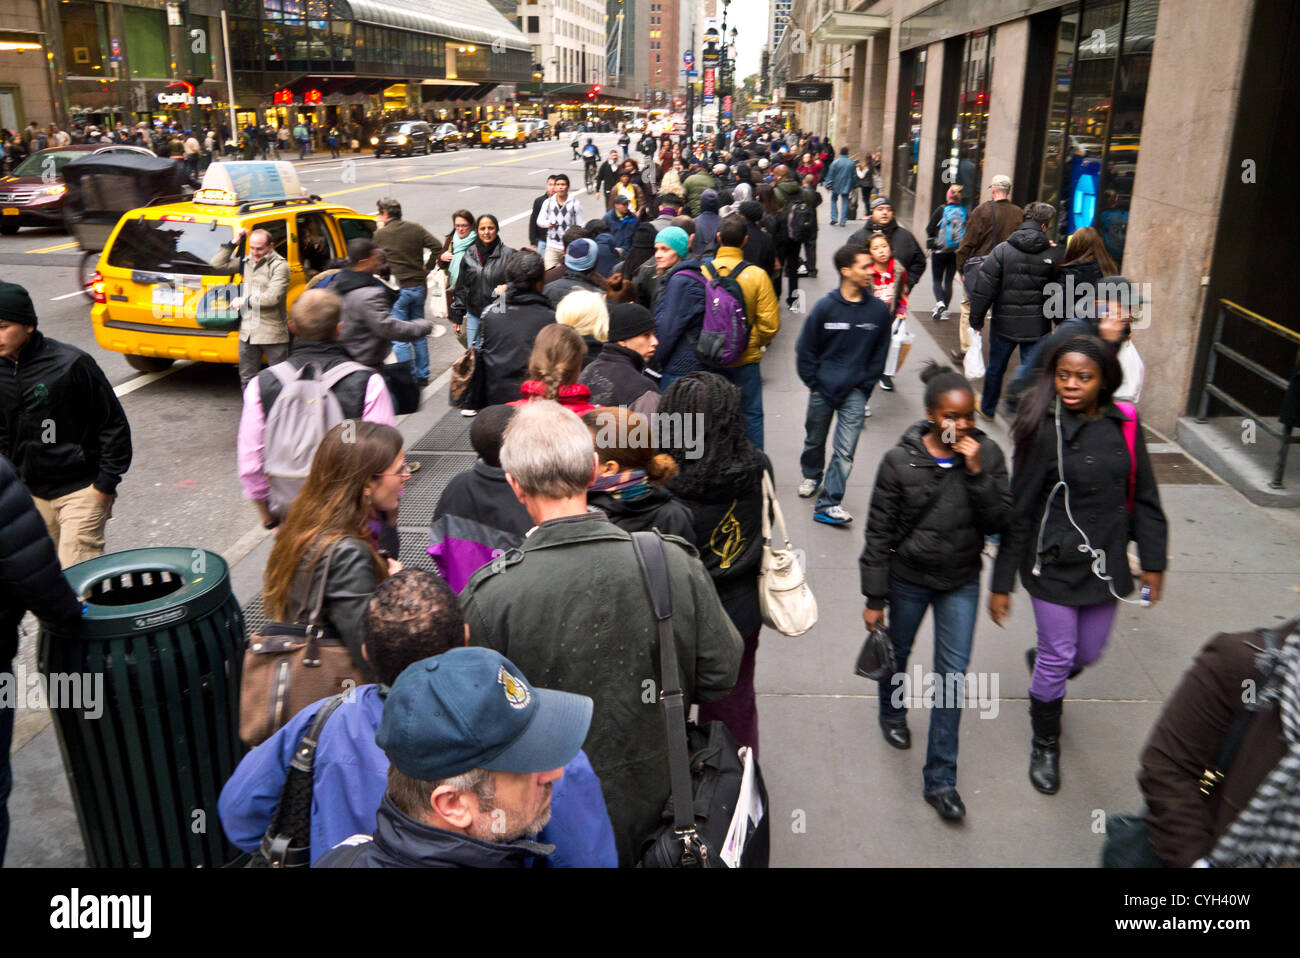 NEW YORK - 2 novembre: pendolari attendere a lungo linee per il servizio di autobus intorno a Grand Central post uragano Sandy Novembre 2, 2012 in New York City. (Foto di Donald Bowers ) Foto Stock